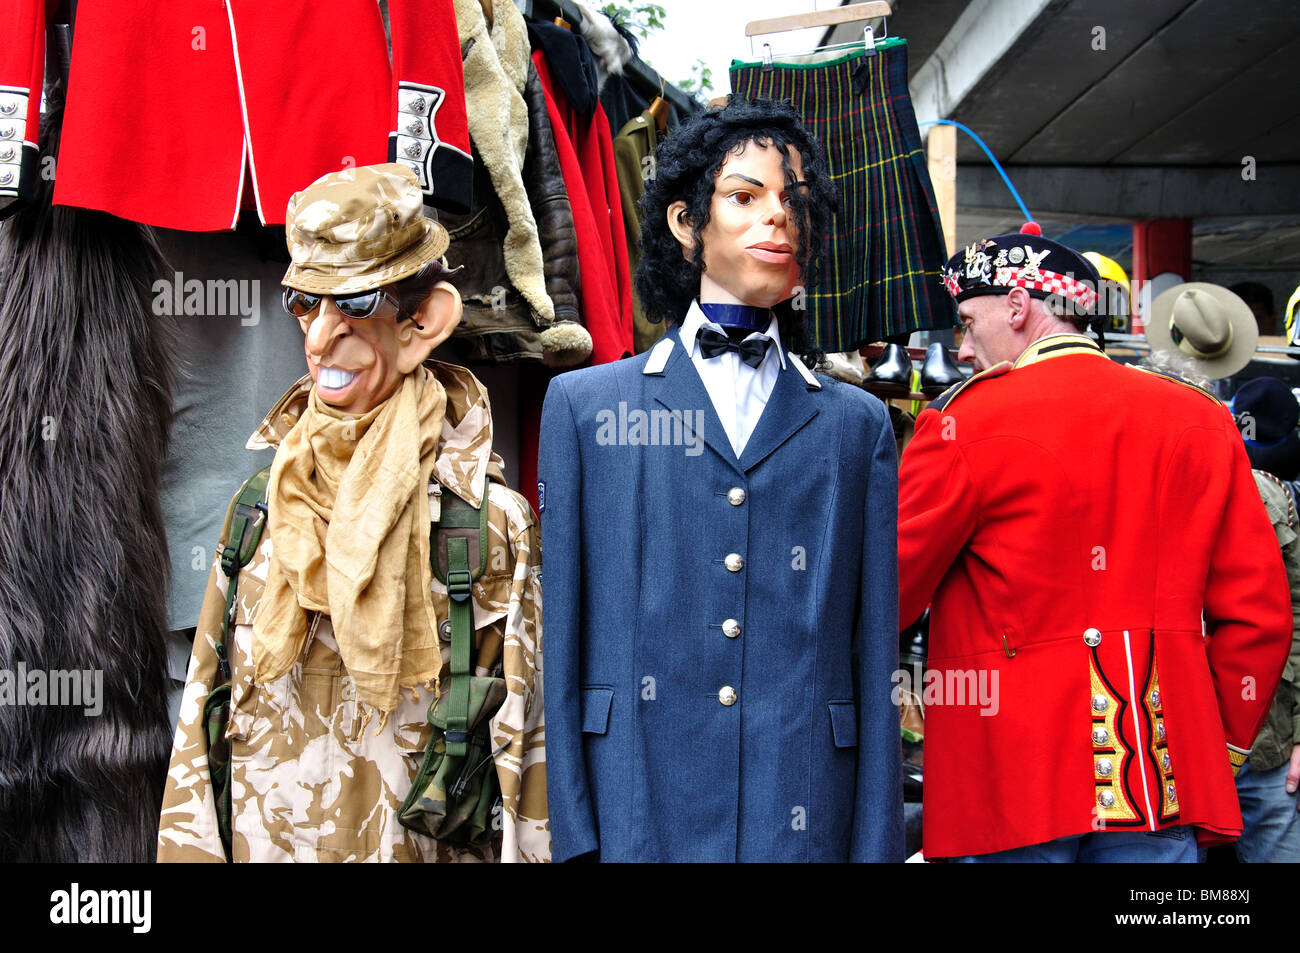 Des mannequins au décrochage, marché d'antiquités de Portobello, Portobello Road, Notting Hill, Londres, Angleterre, Royaume-Uni Banque D'Images